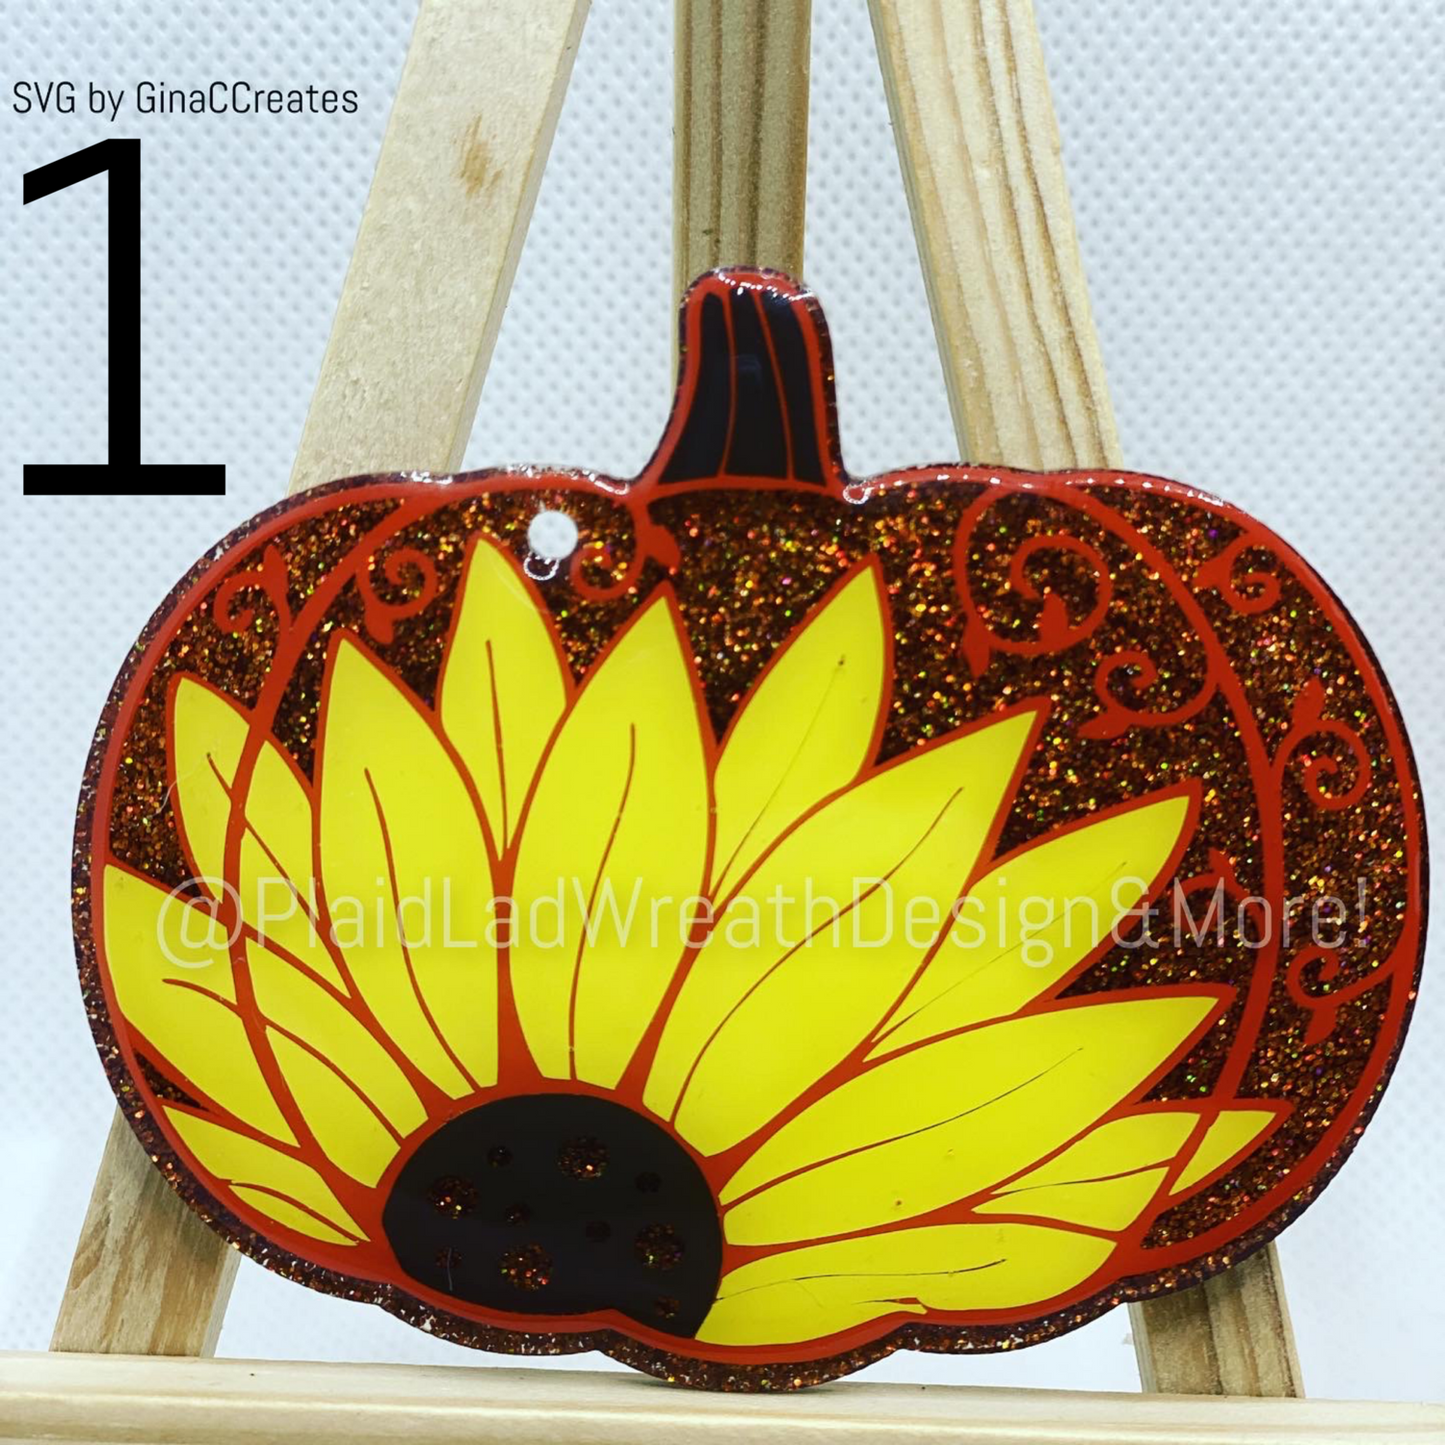 3" Sunflowerkin